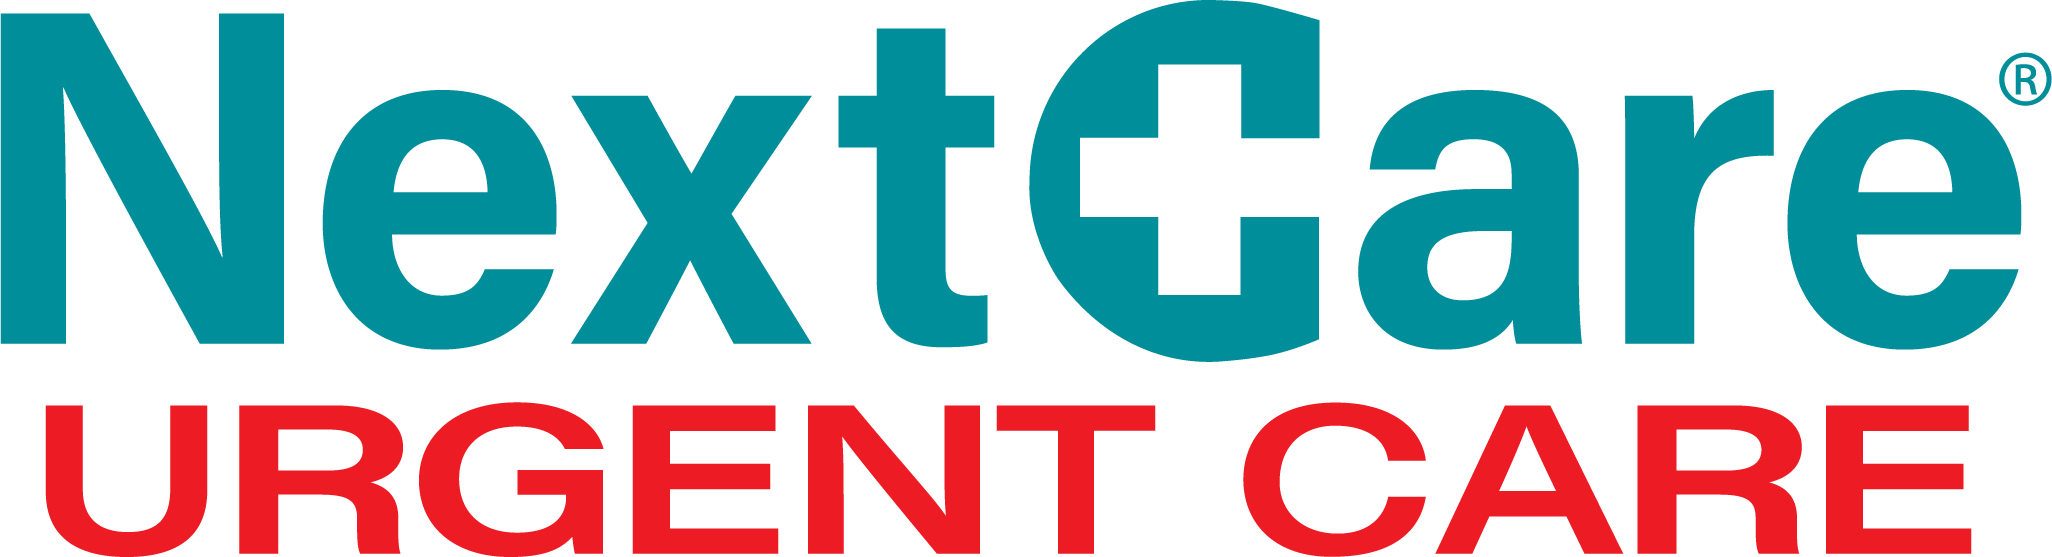 NextCare Urgent Care - Estrella Logo